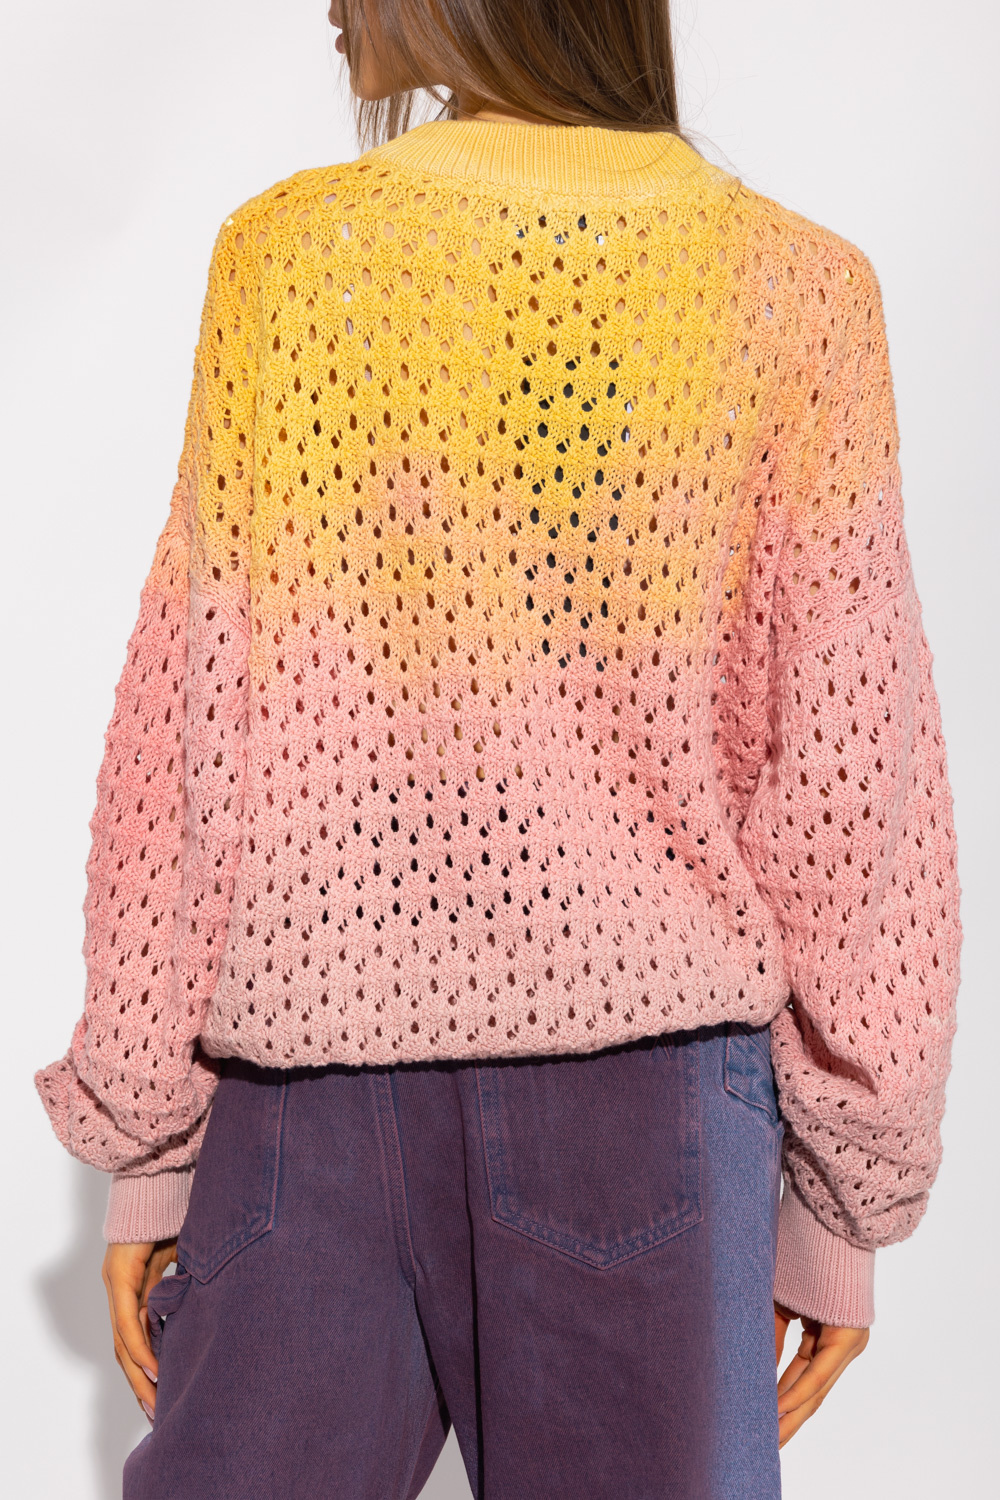 The Attico Crochet sweater